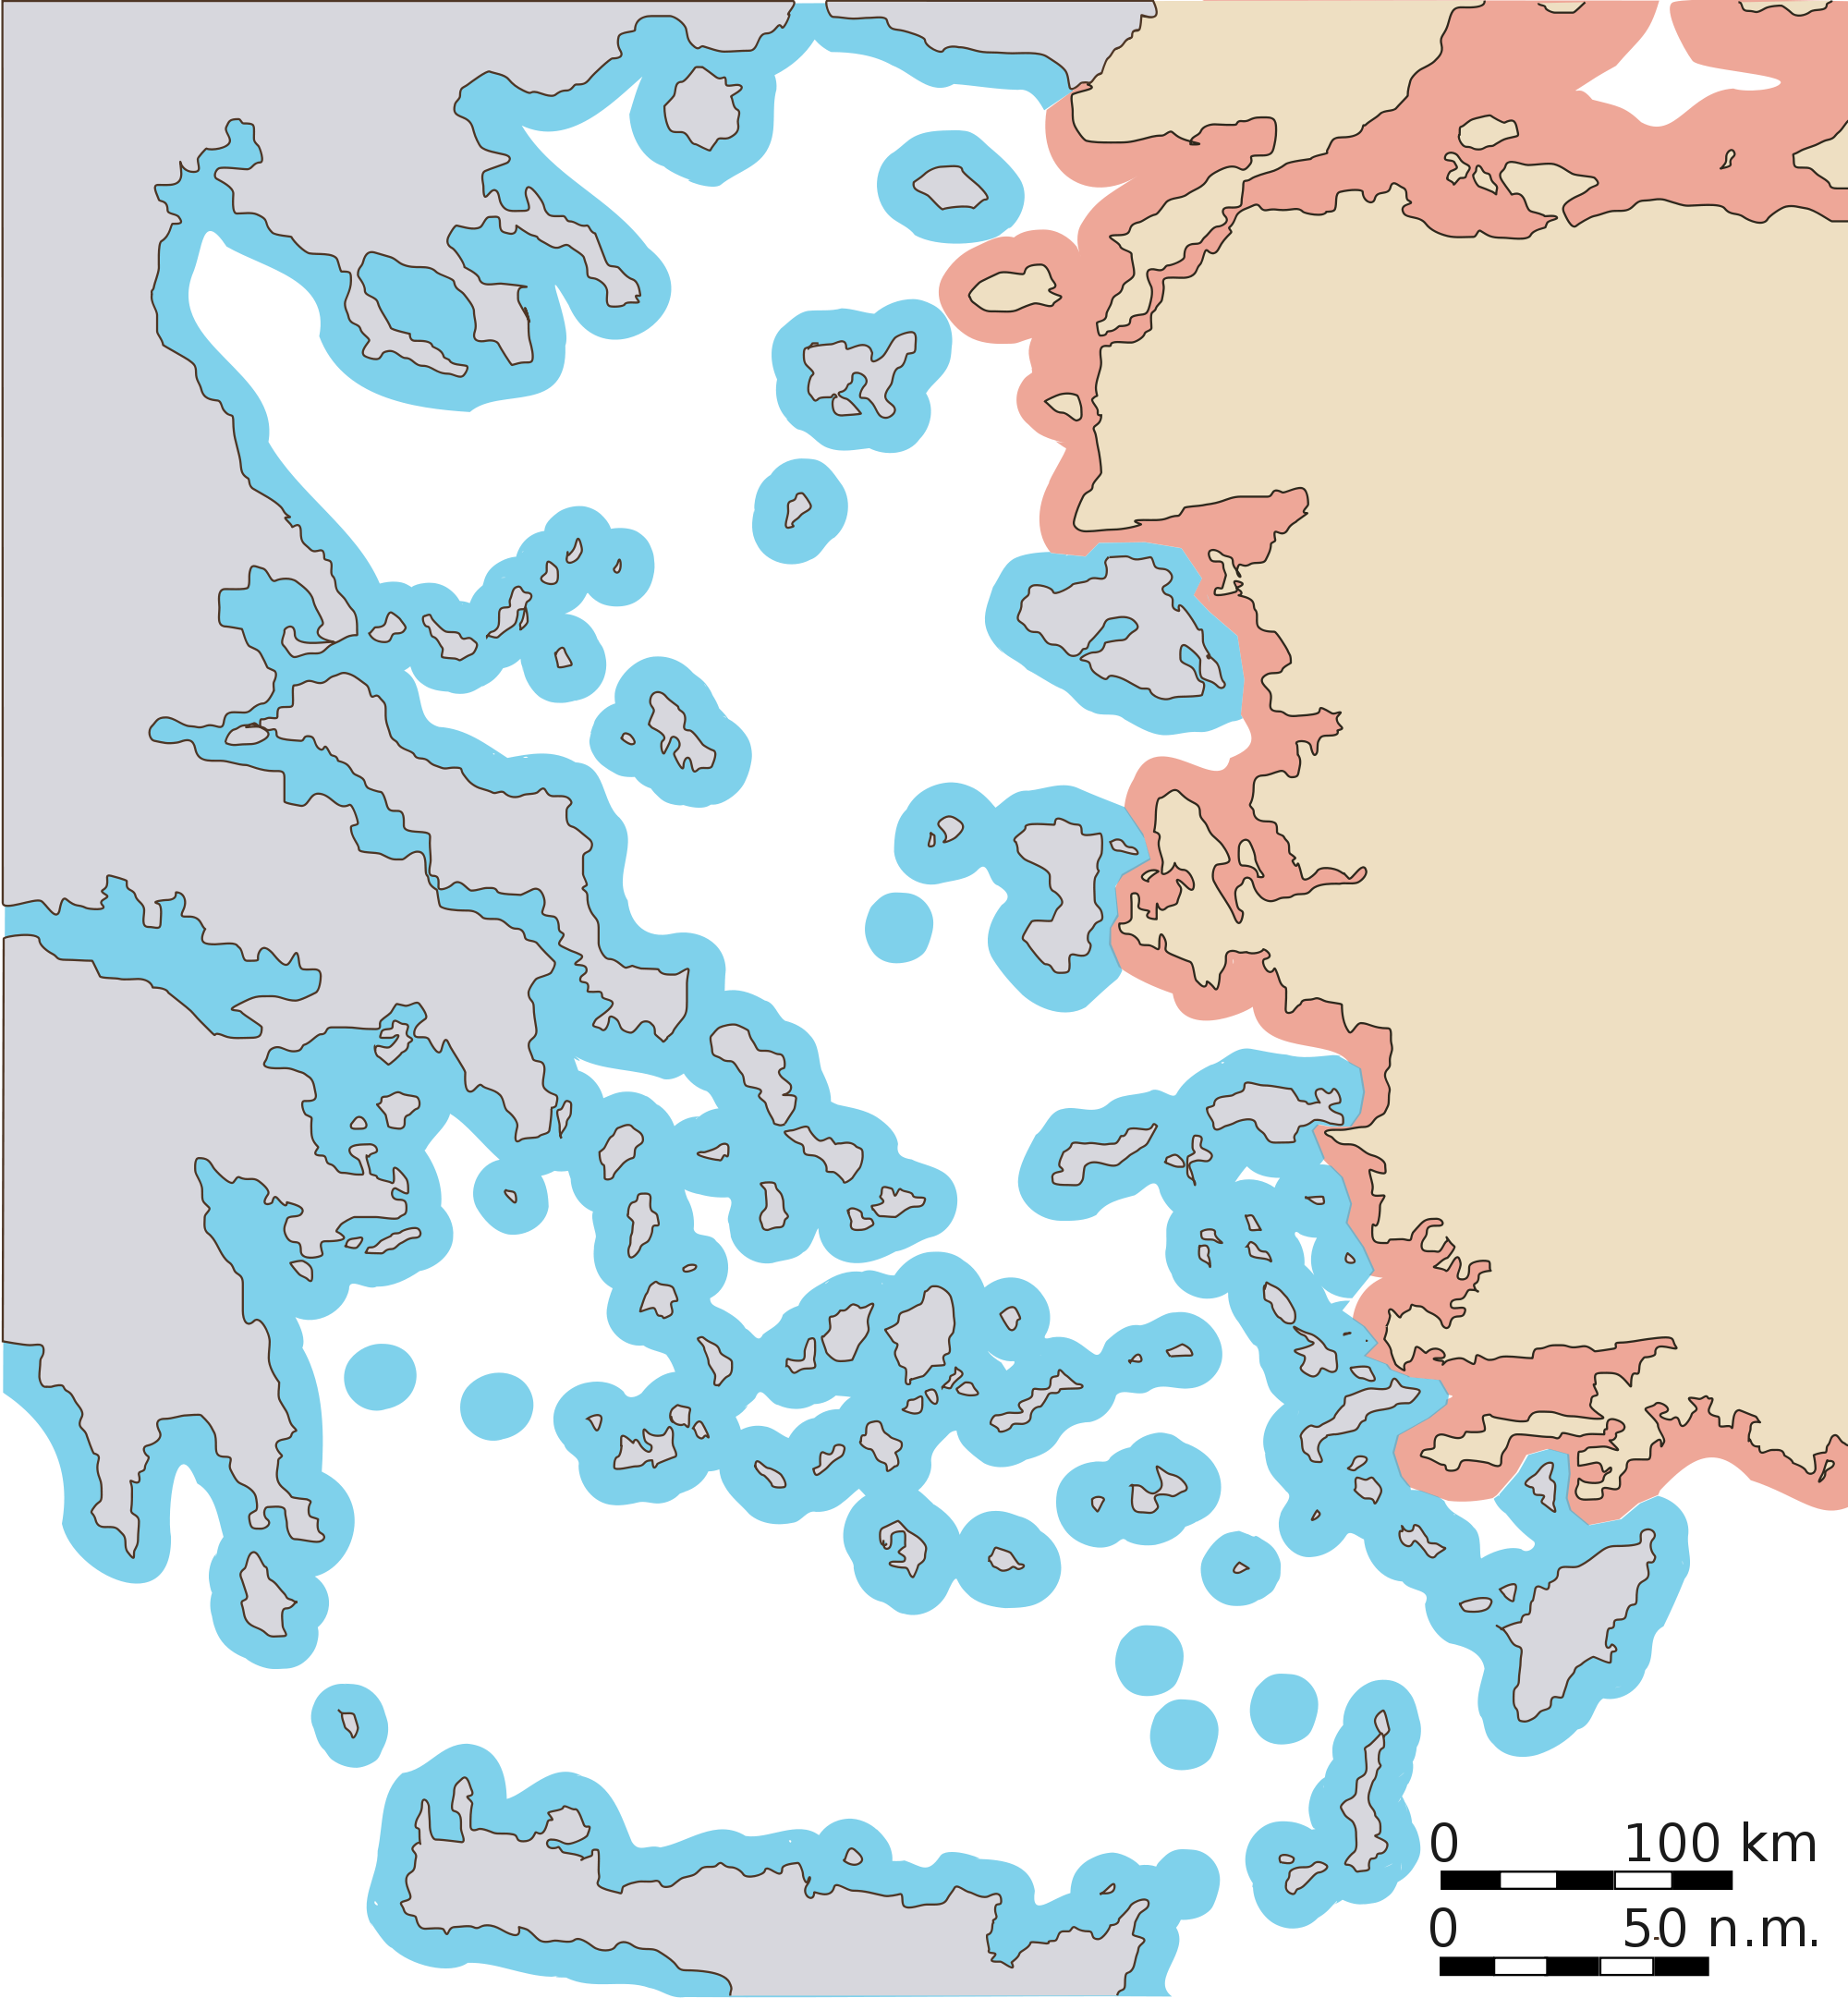 Aegean dispute - Wikipedia